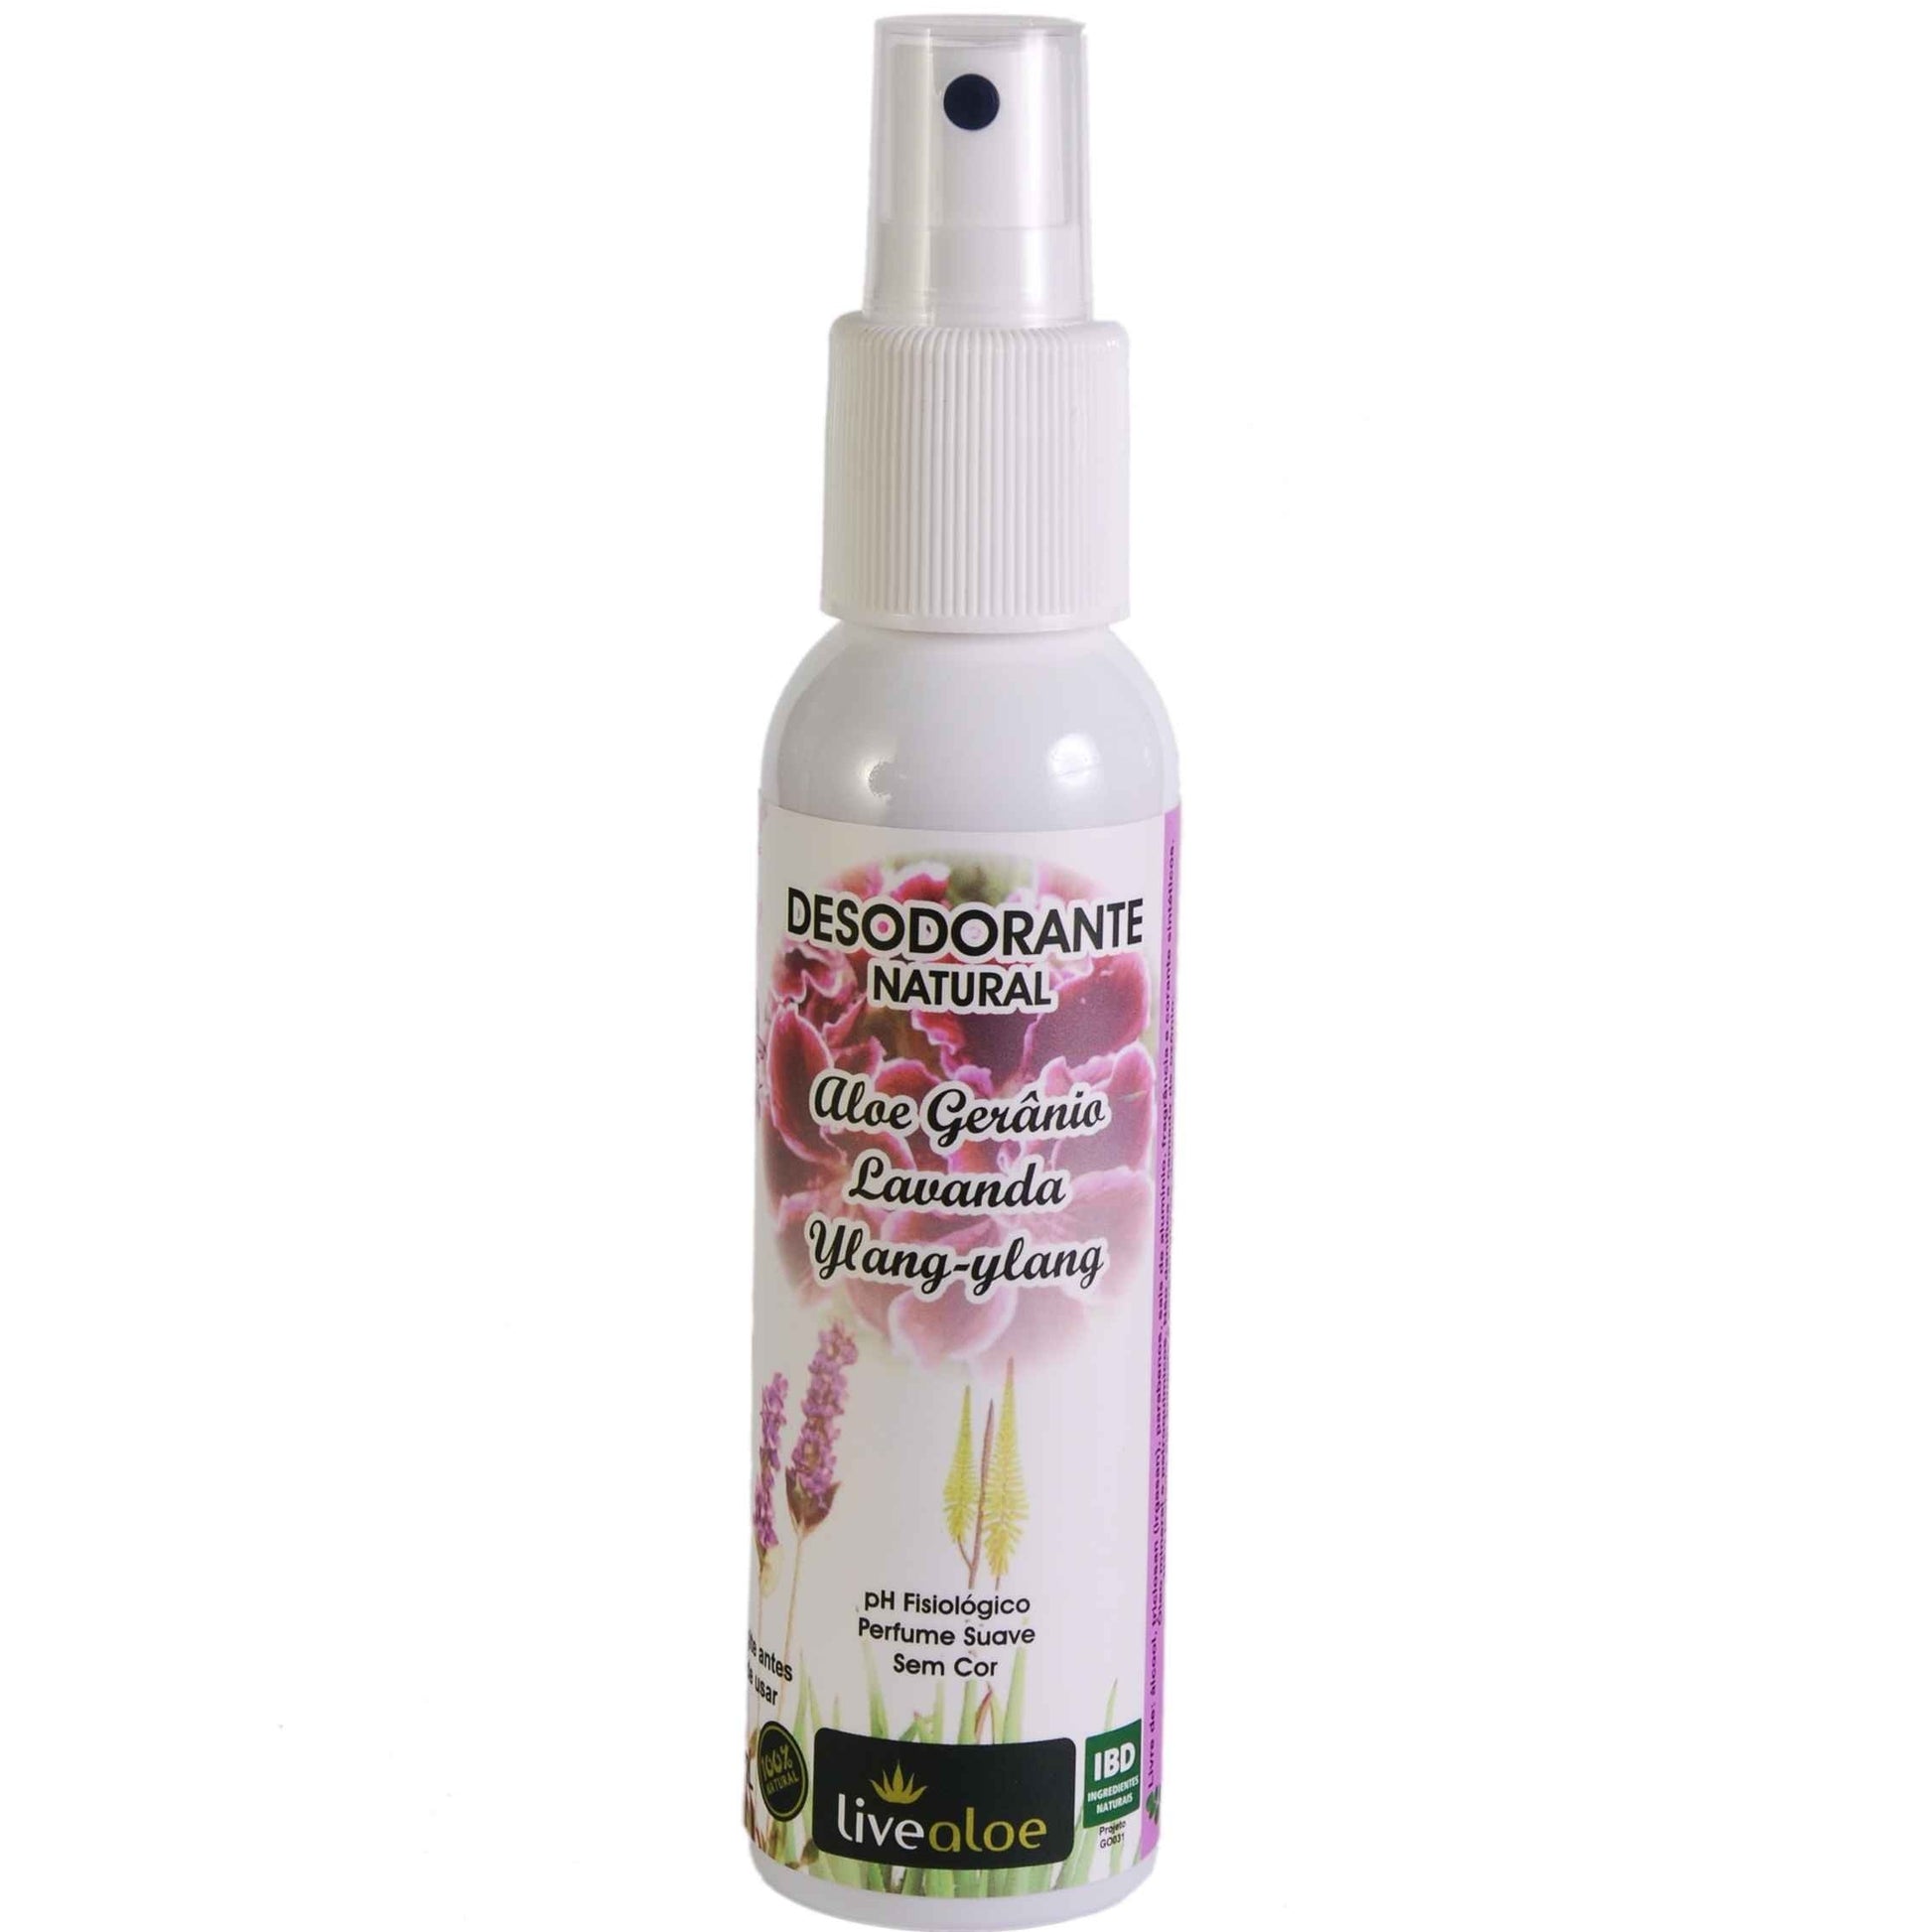 Desodorante Natural Aloe Gerânio - LiveAloe - Frasco com 60ml - Mundo dos Óleos